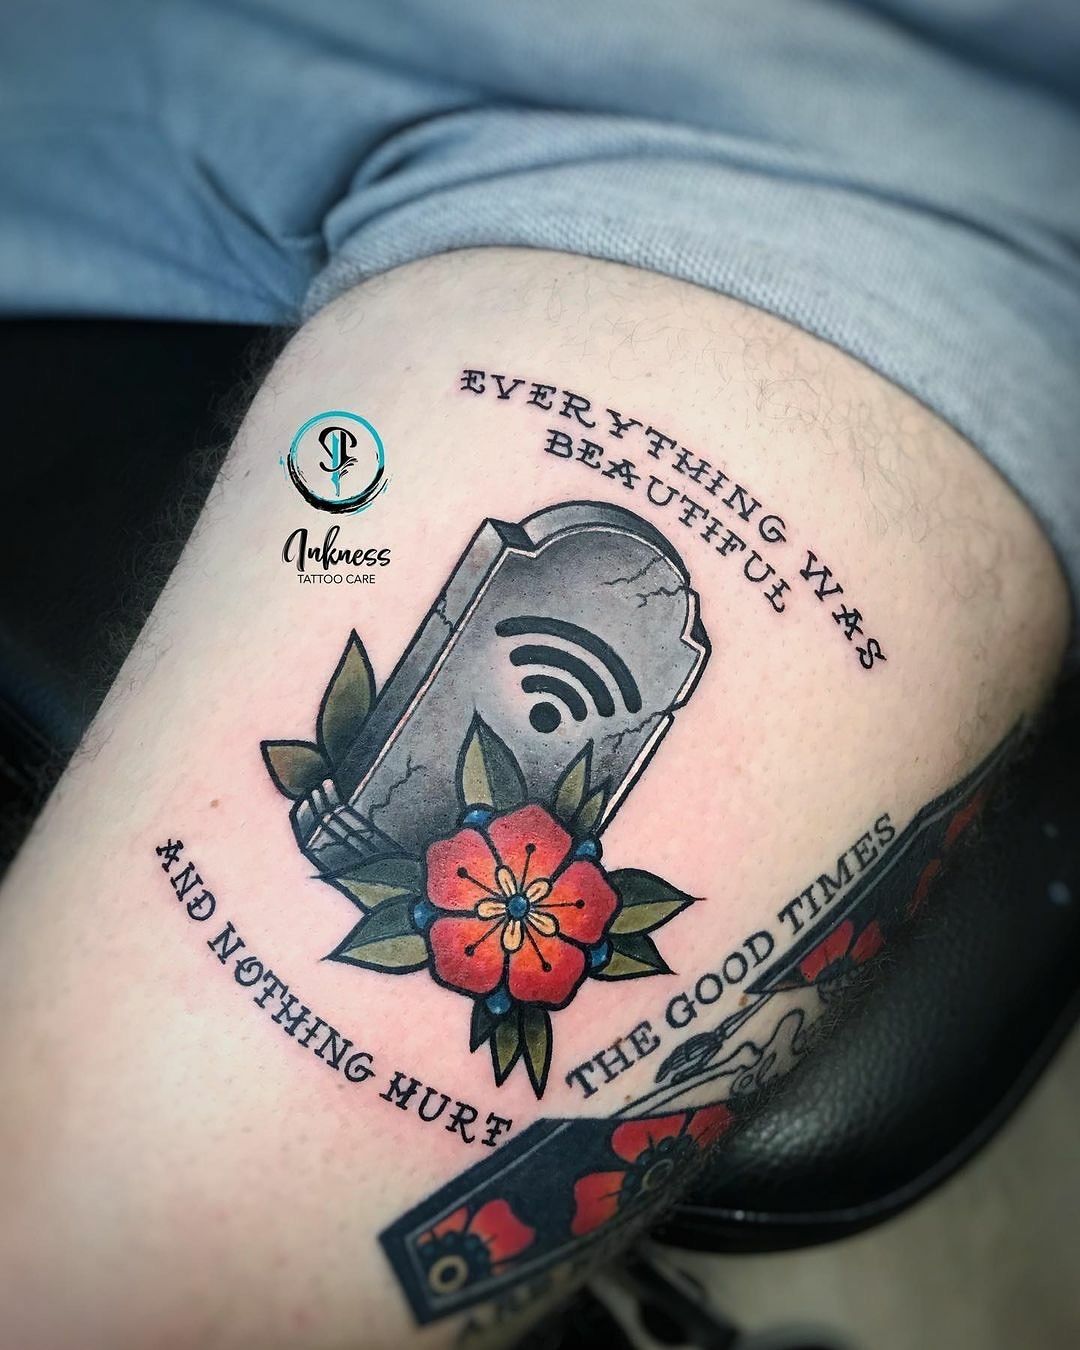 Comb tetoválás, Fantázia tetoválás, Színes tetoválás, Virág tetoválás